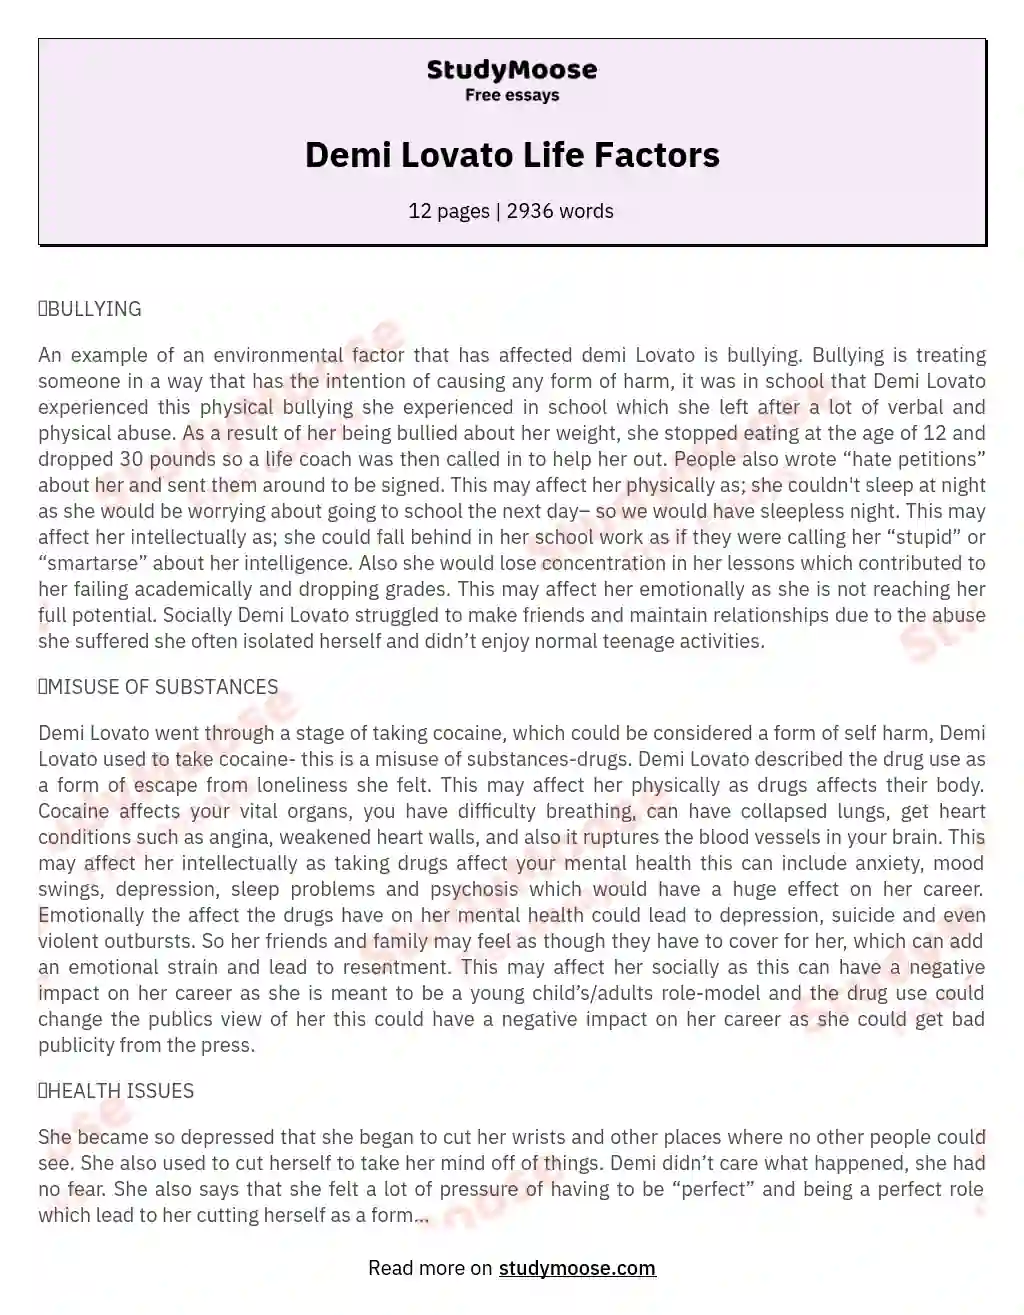 Demi Lovato Life Factors essay